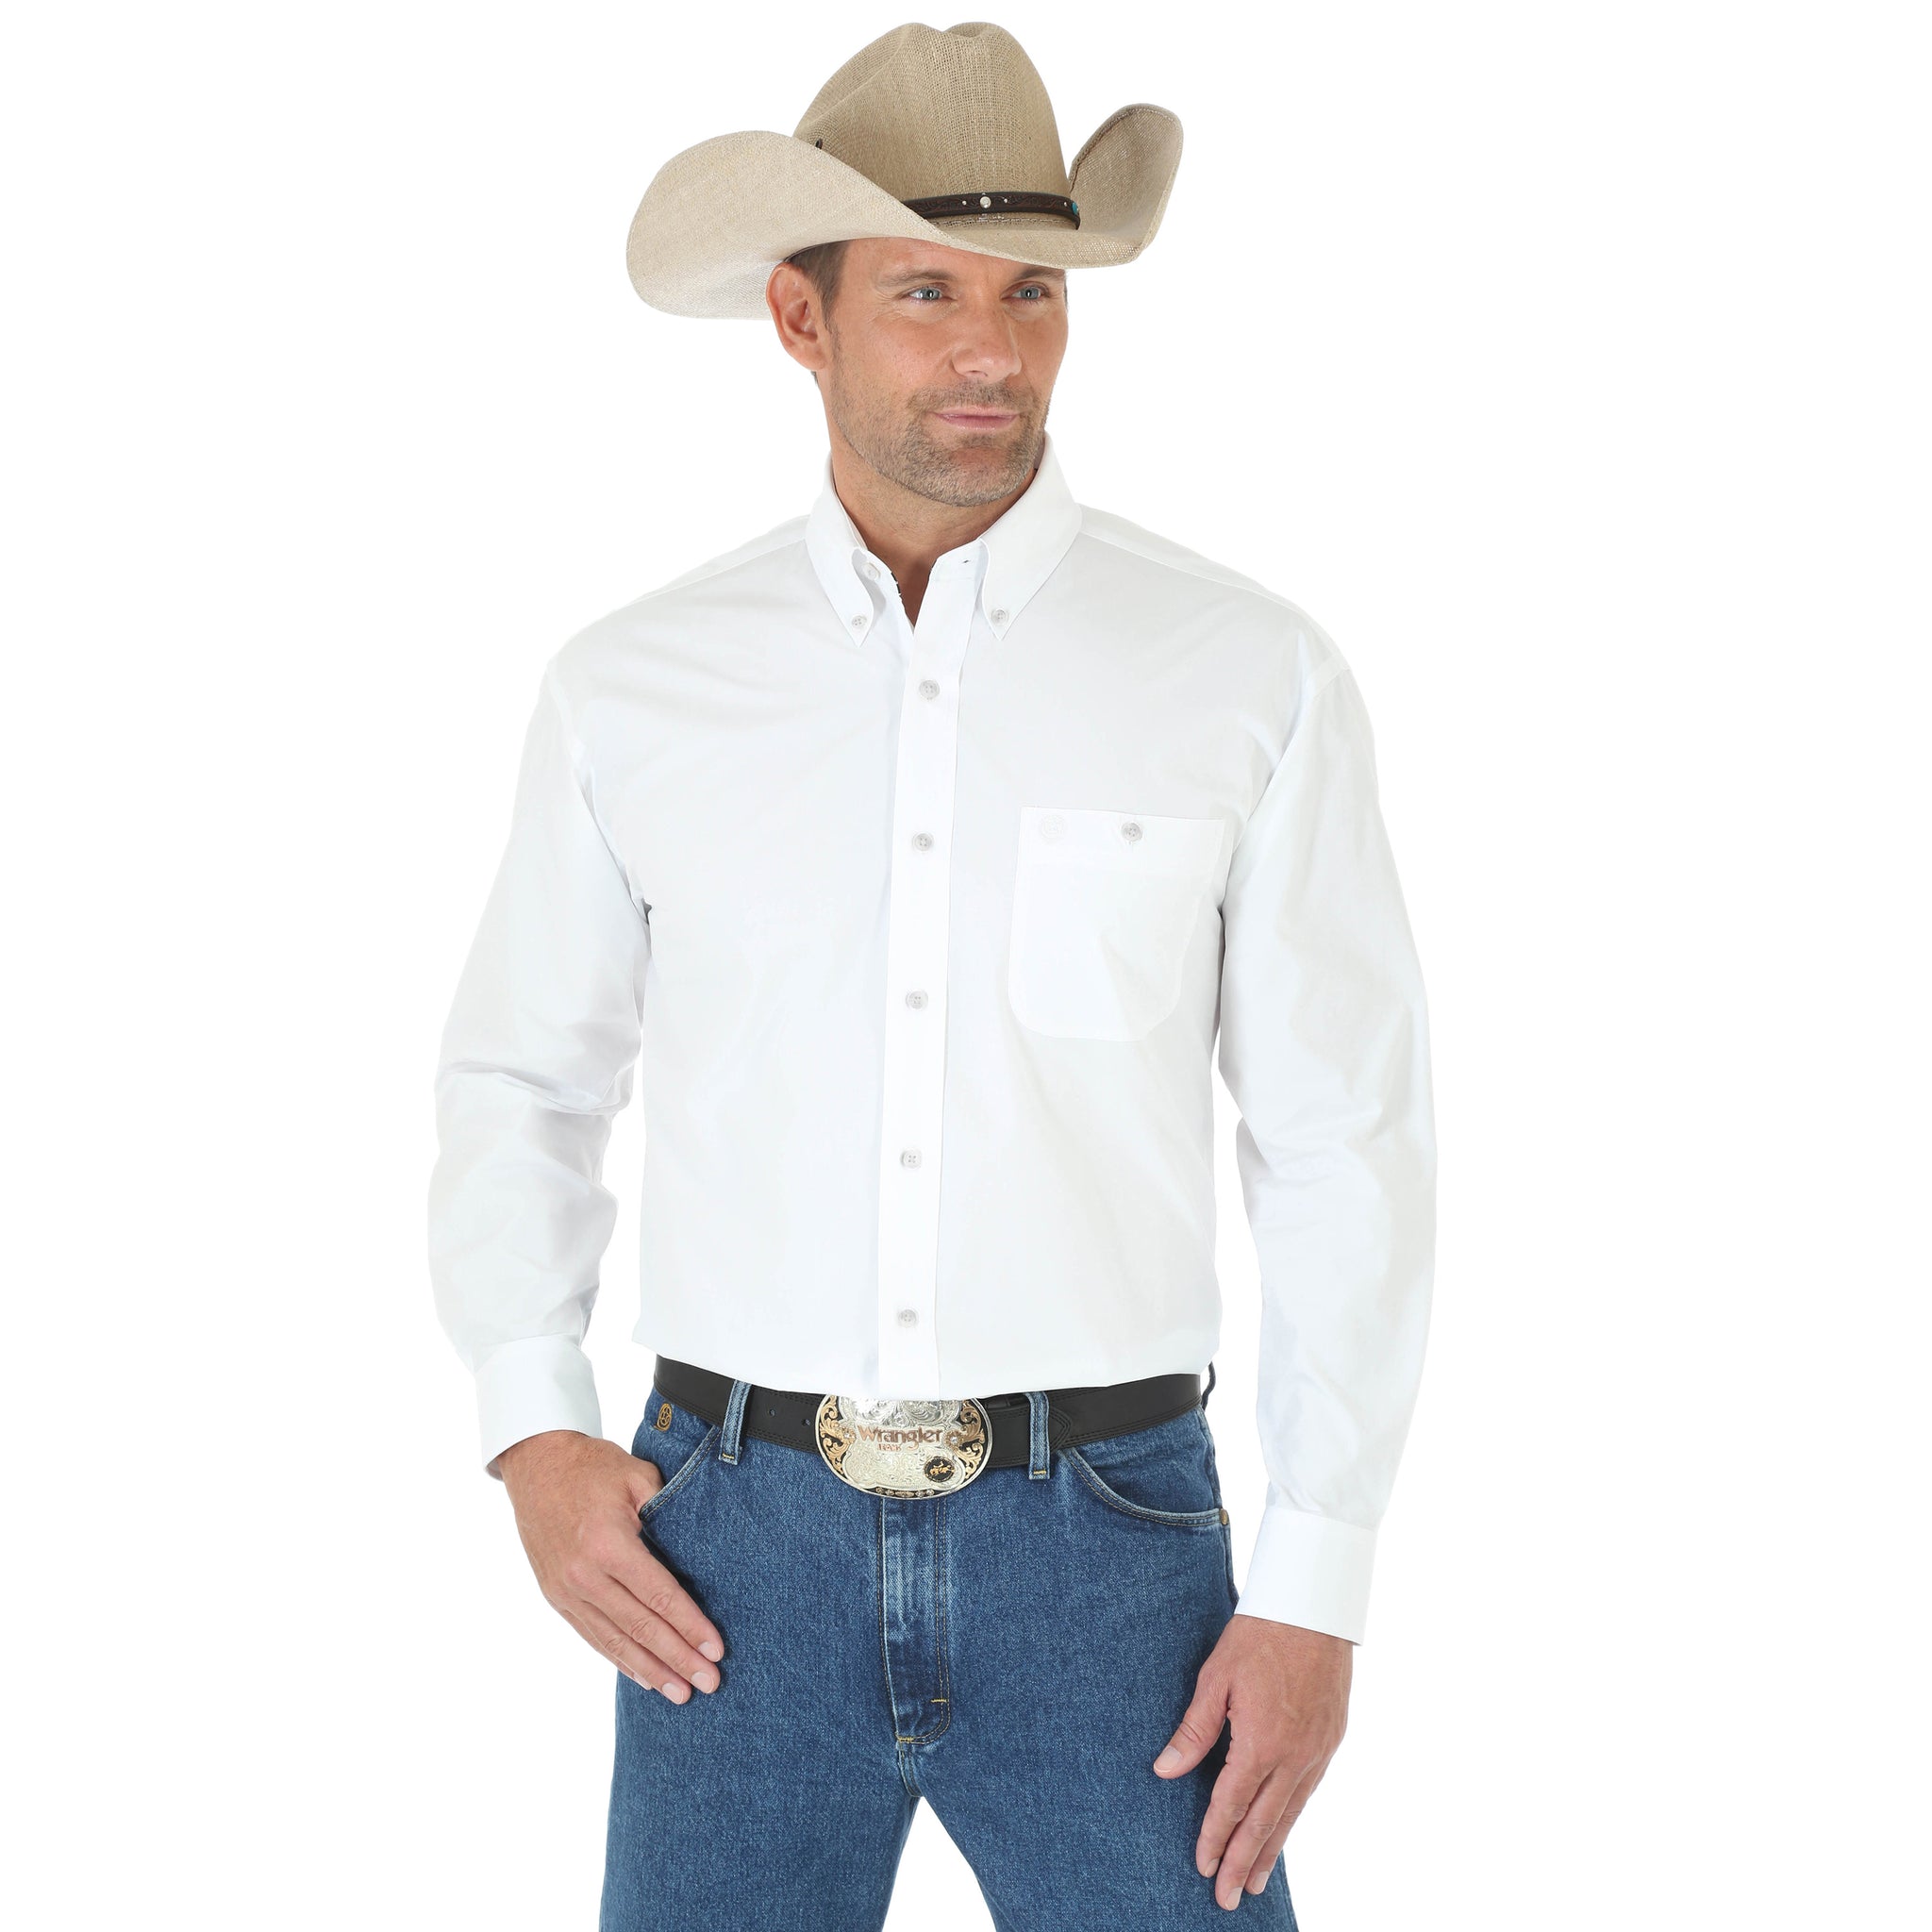 Wrangler Men's George Strait Long Sleeve Shirt White - Gavel Western Wear